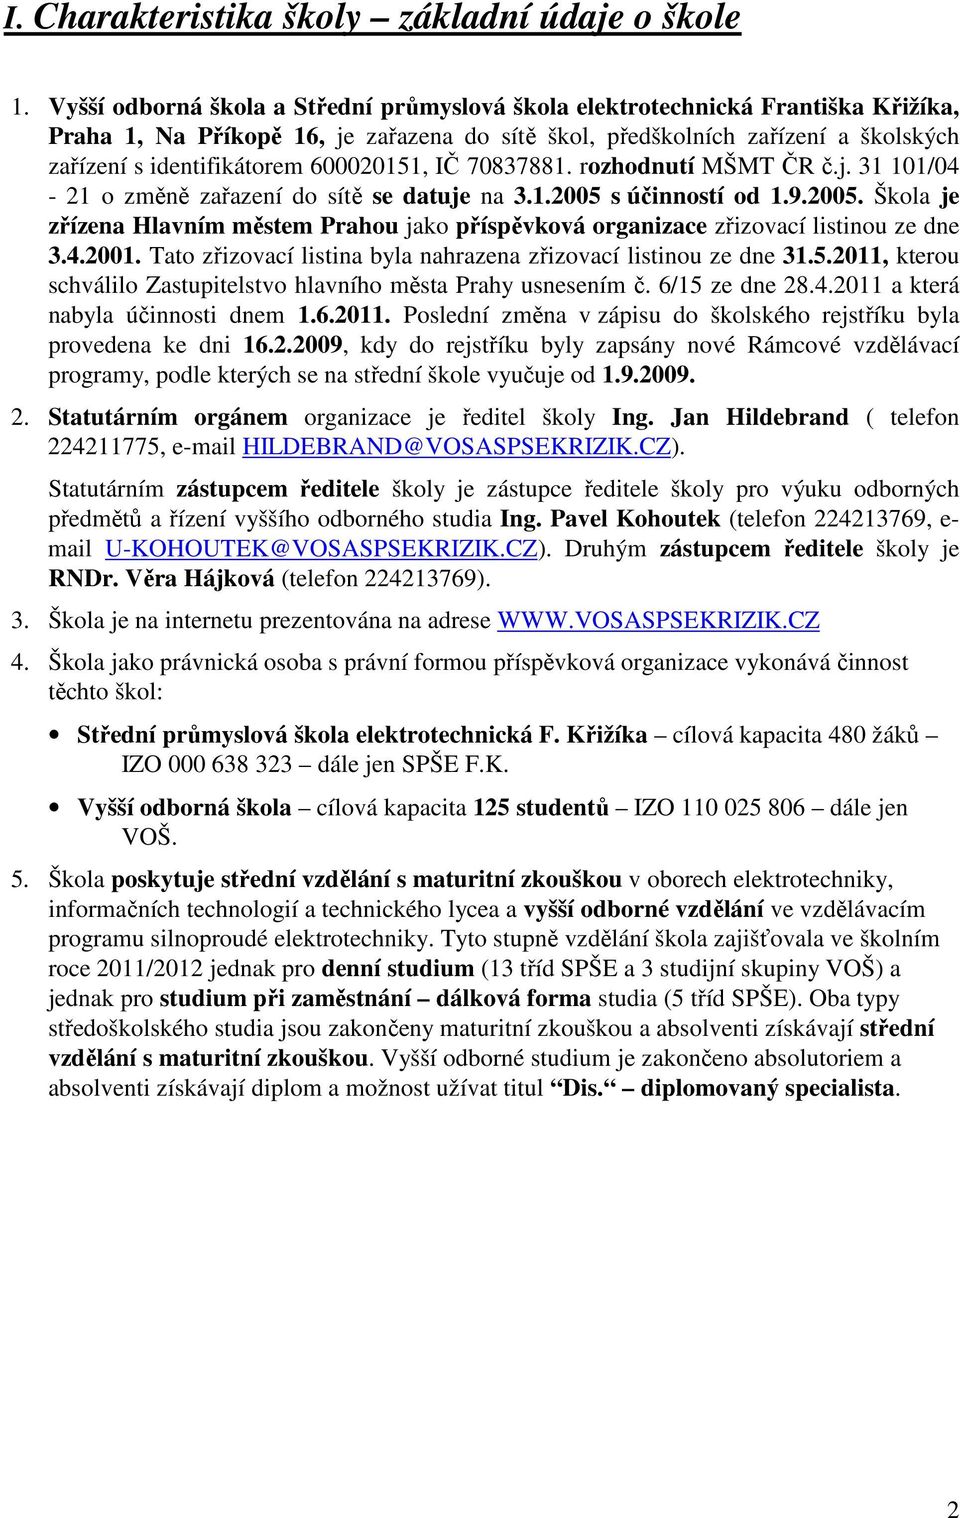 600020151, IČ 70837881. rozhodnutí MŠMT ČR č.j. 31 101/04-21 o změně zařazení do sítě se datuje na 3.1.2005 